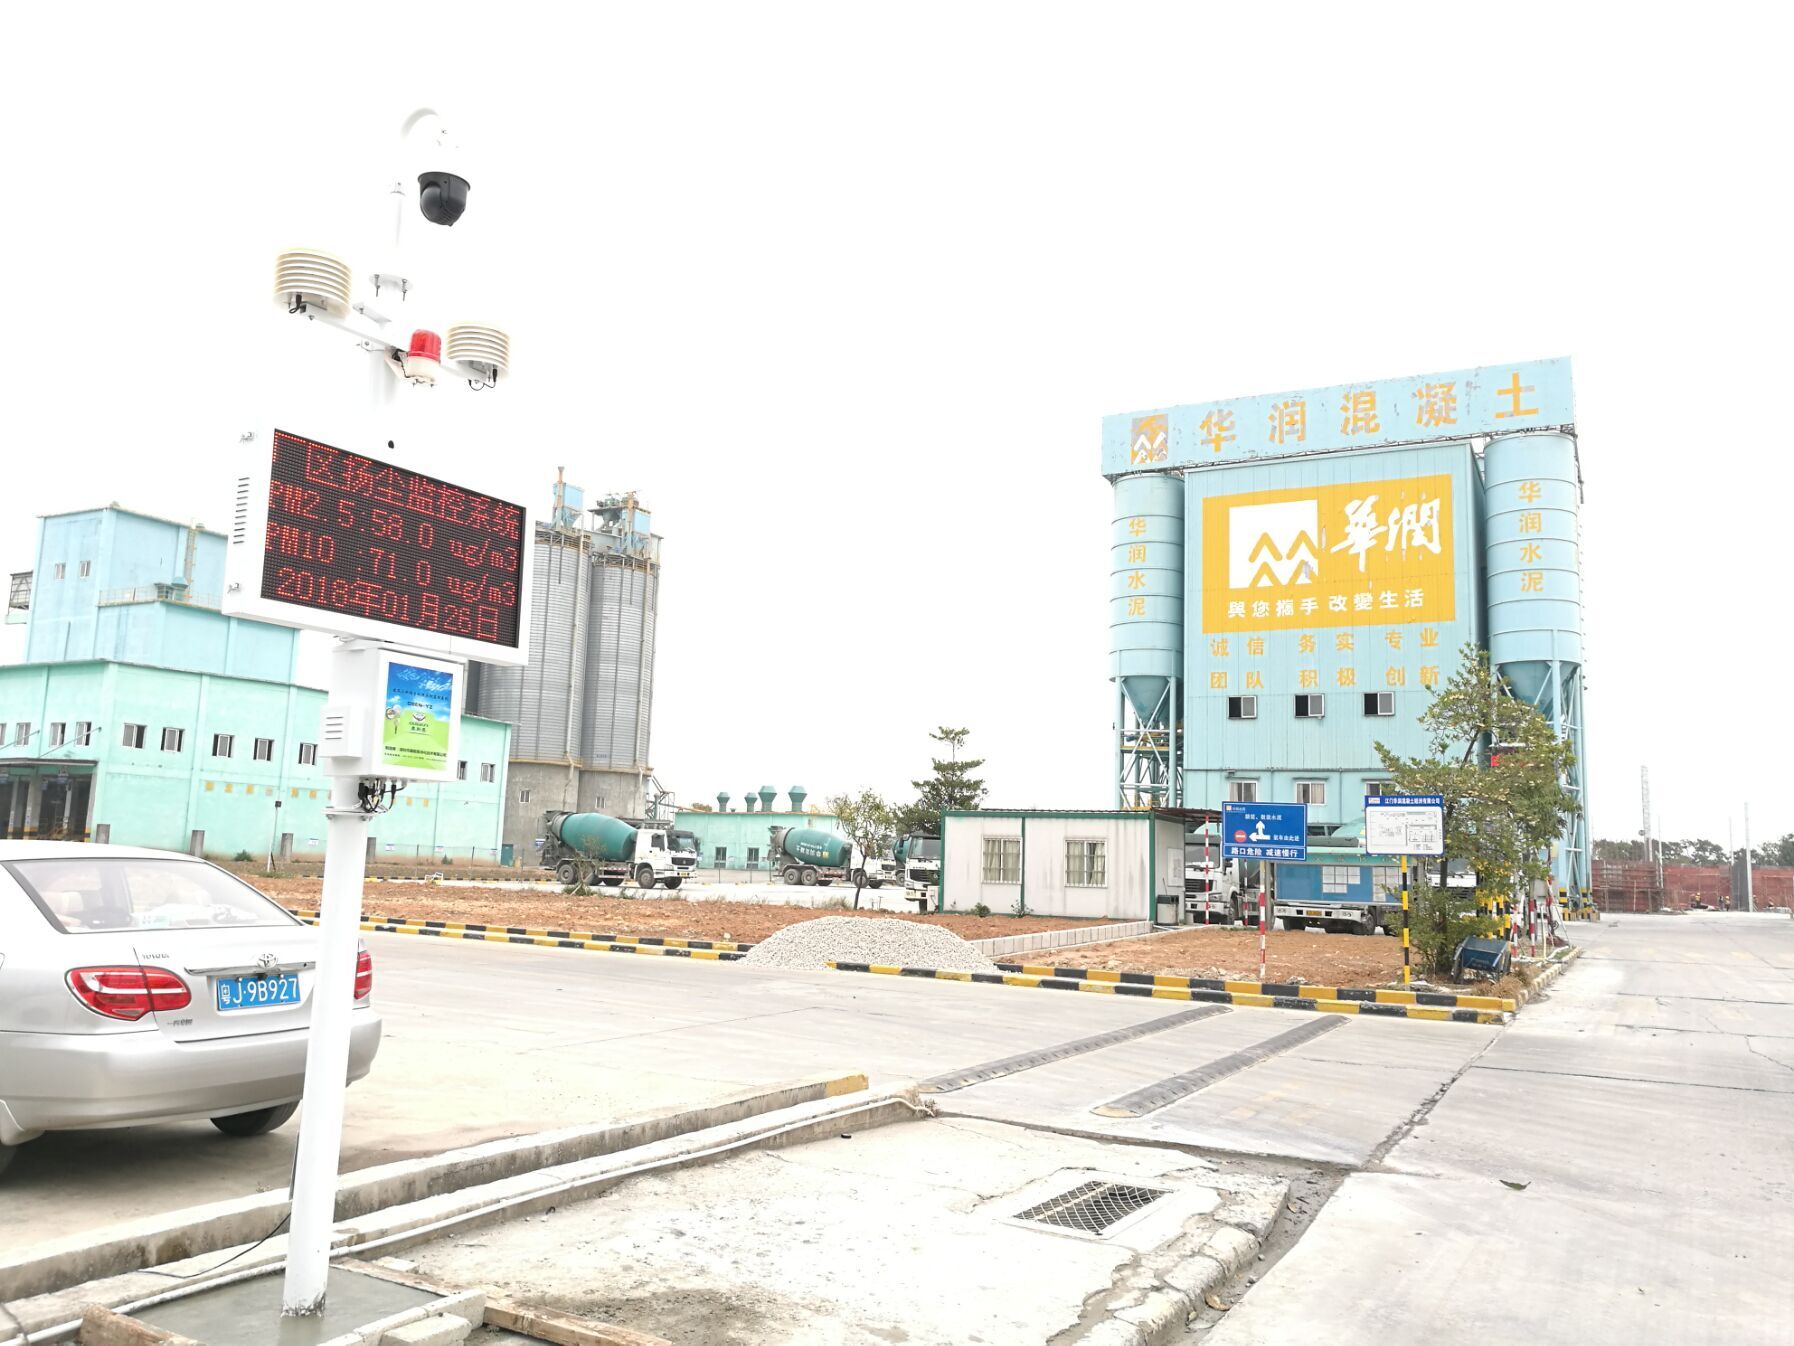  深圳市道路扬尘监测抓拍系统